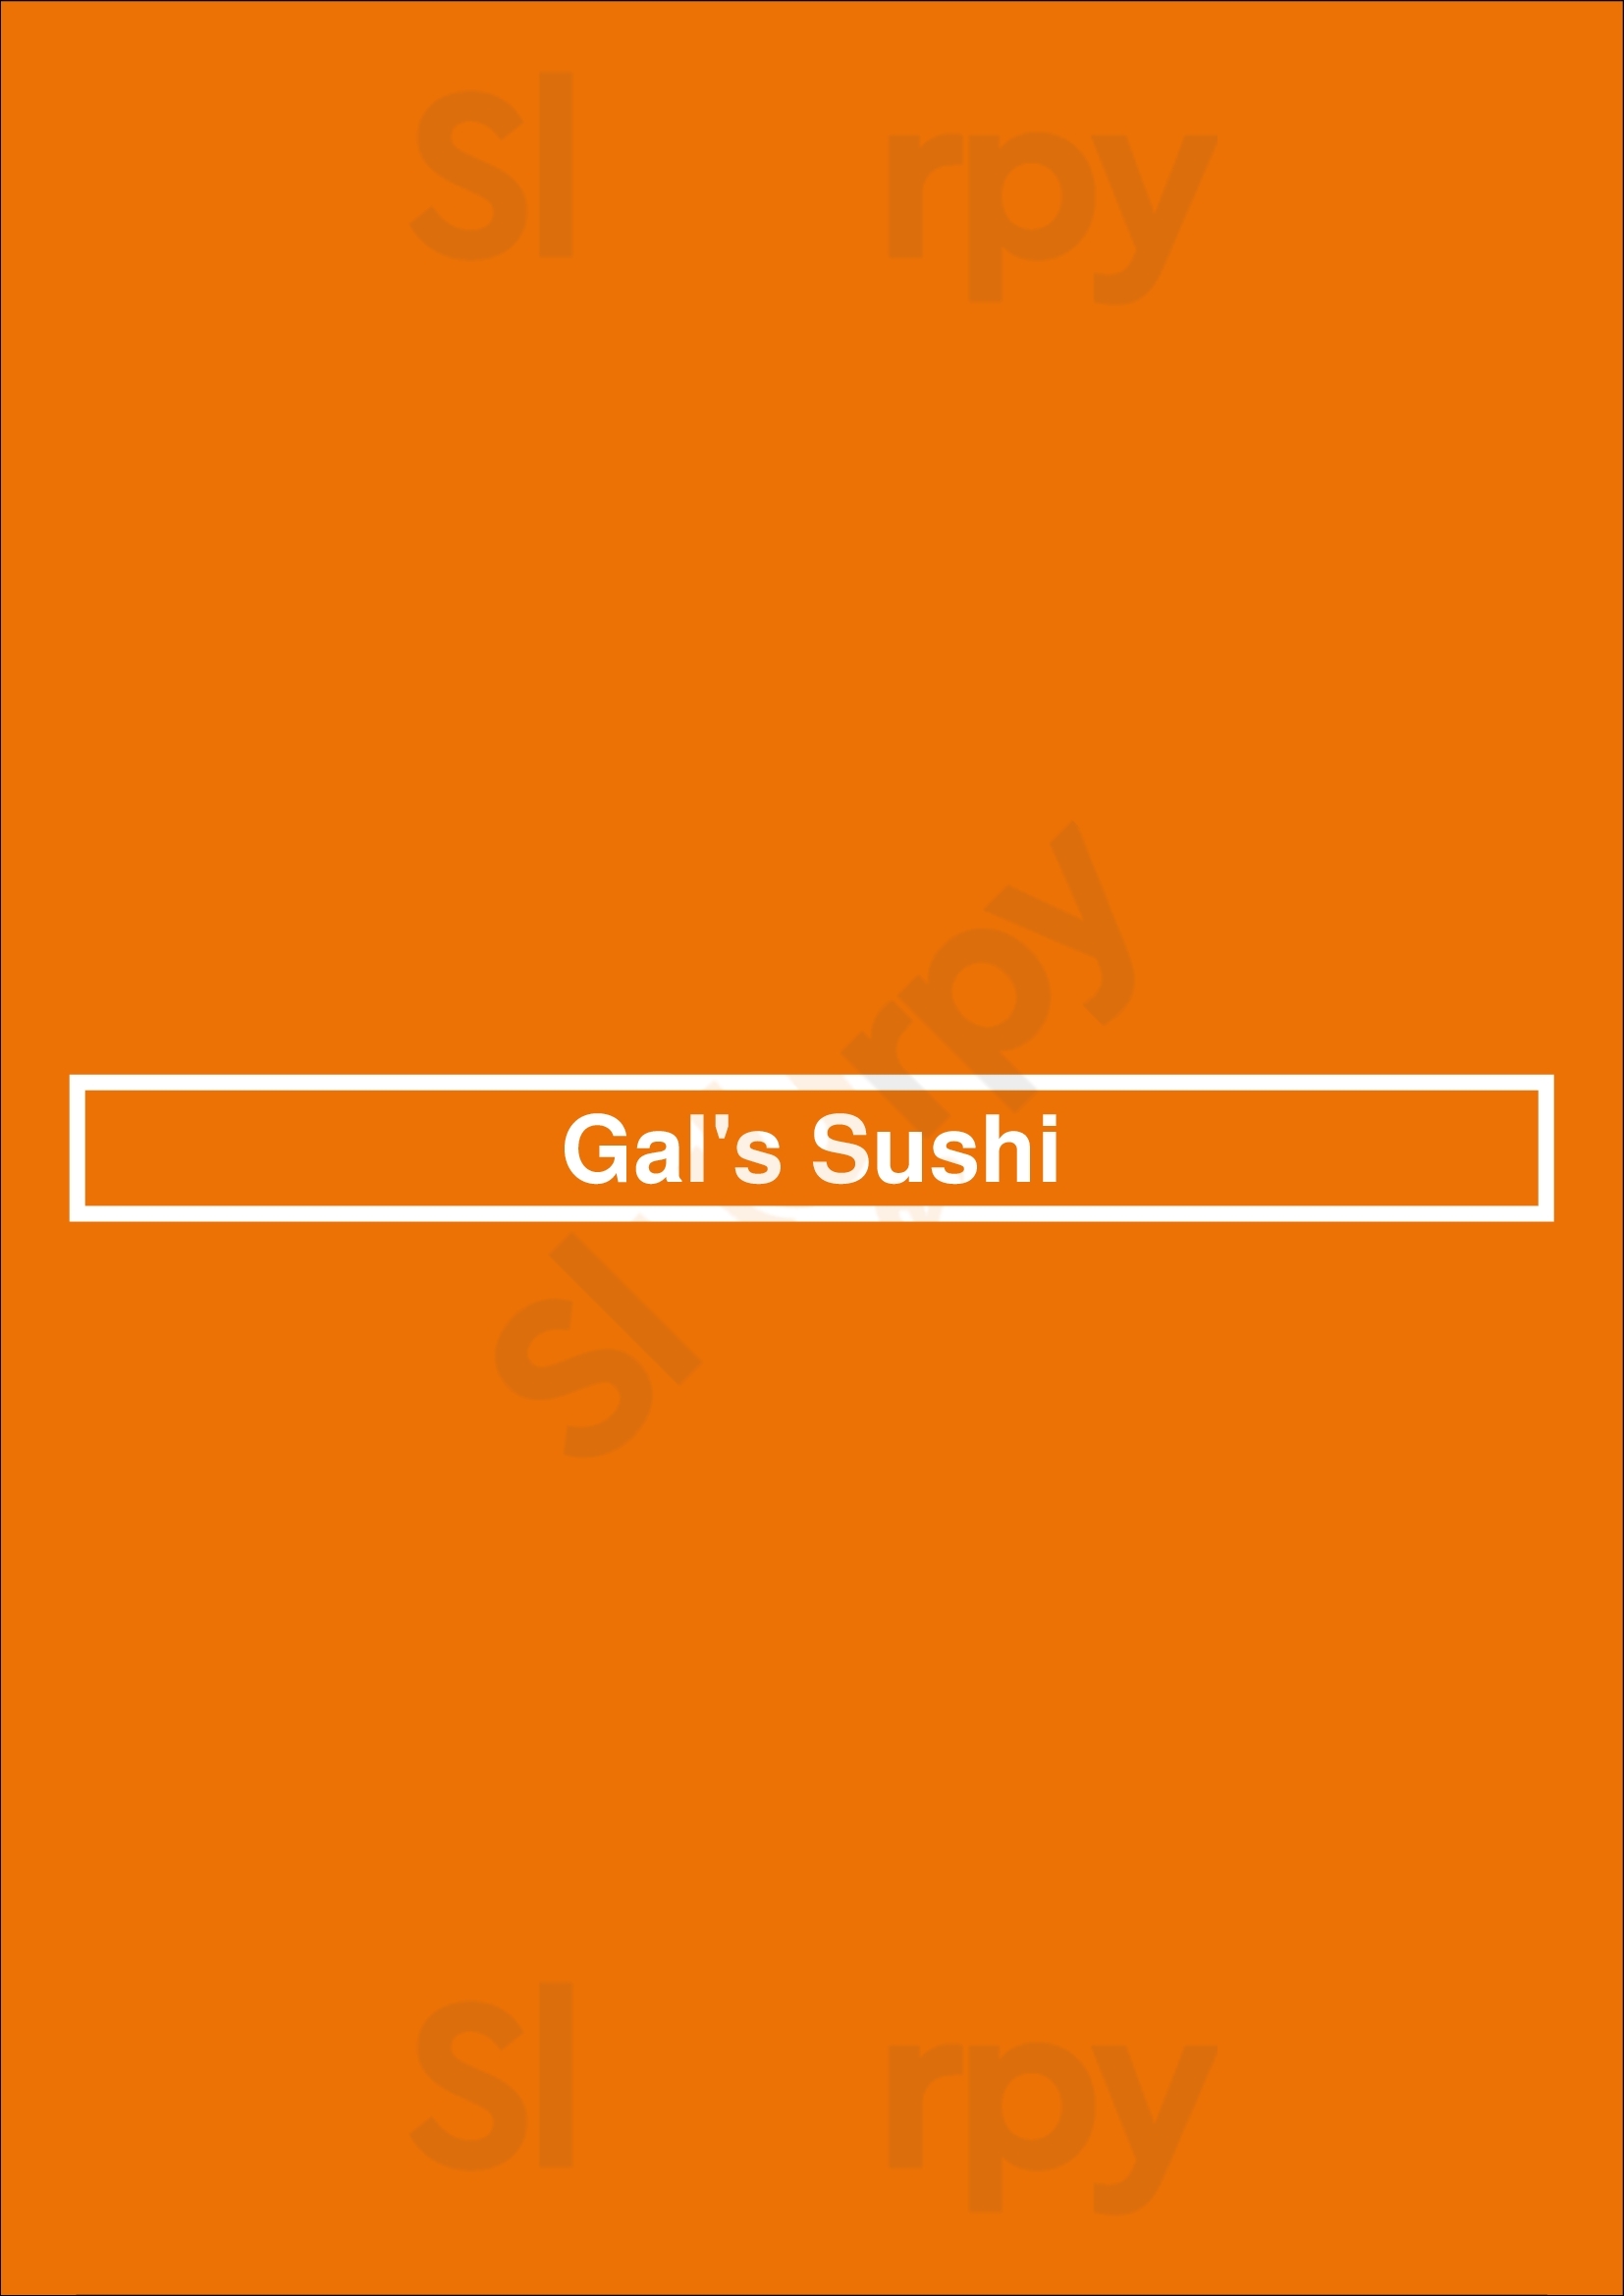 Gal's Sushi Thornhill Menu - 1